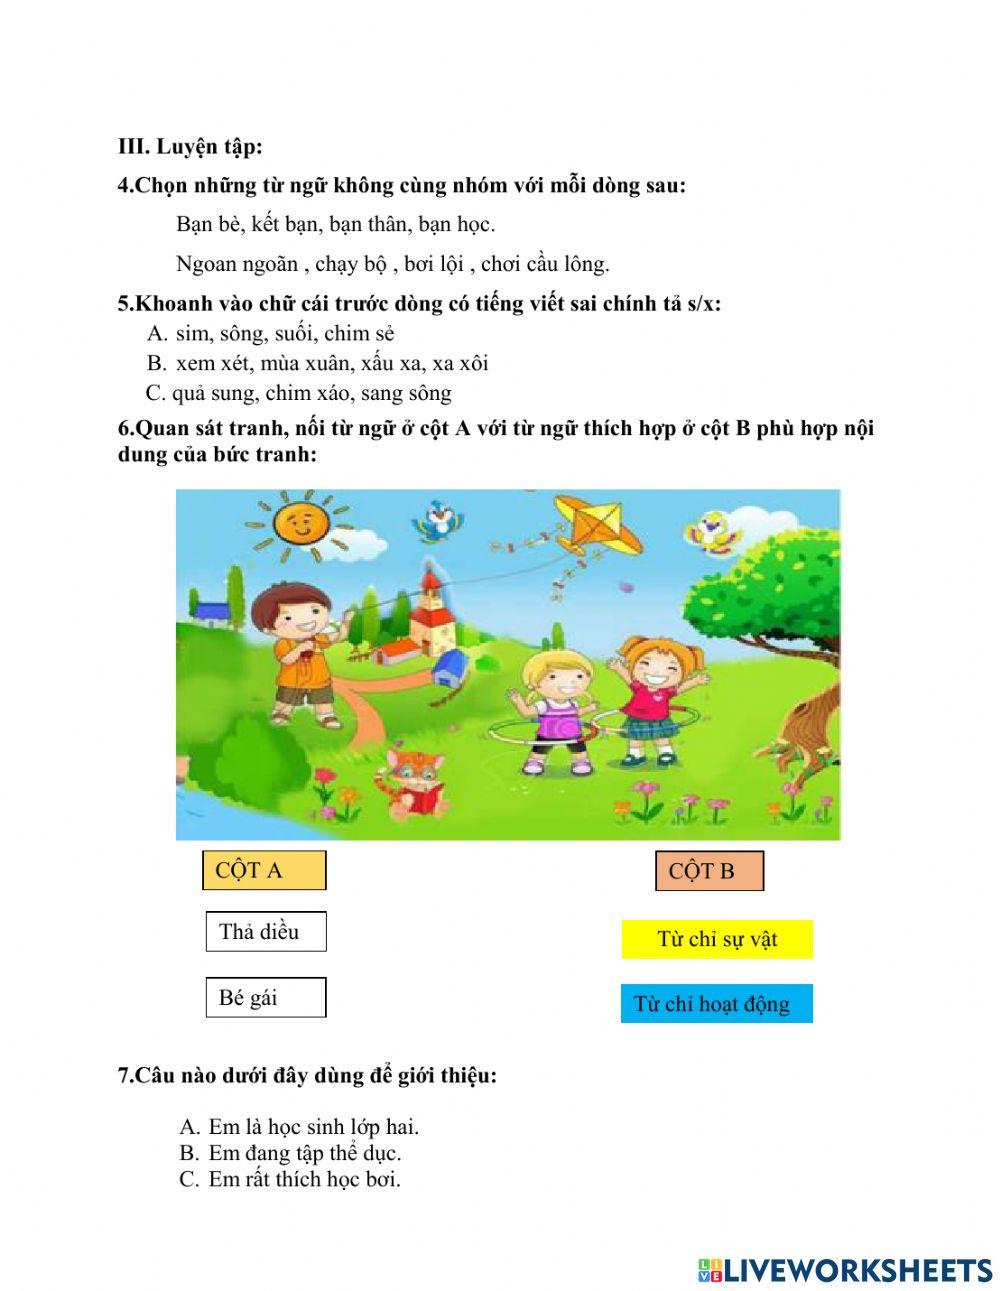 Phiếu Bài tập Tiếng Việt cuối tuần 3 - lớp 2